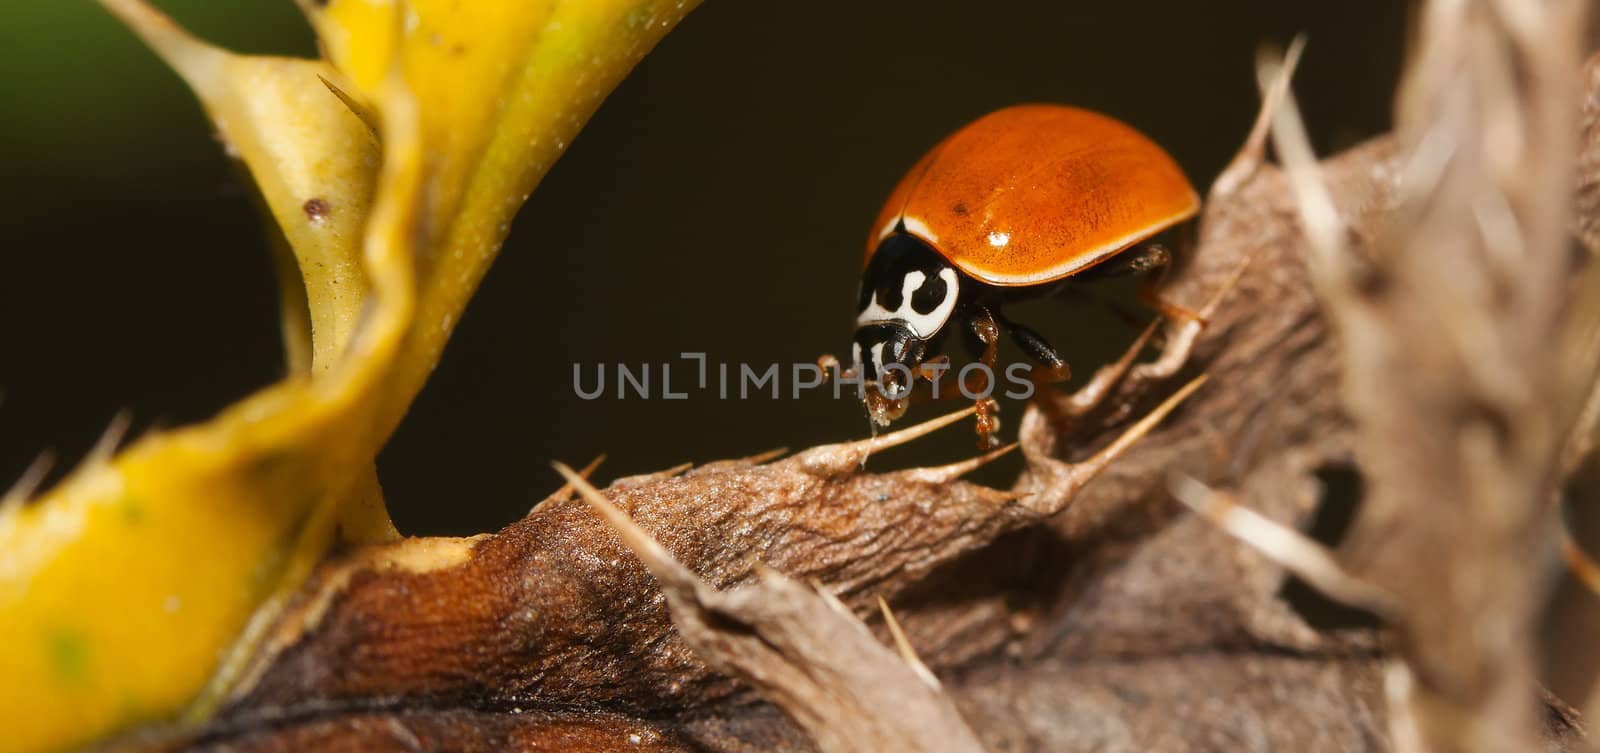 Asian Ladybug Beetle, (Harmonia axyridis) on a plant stem.